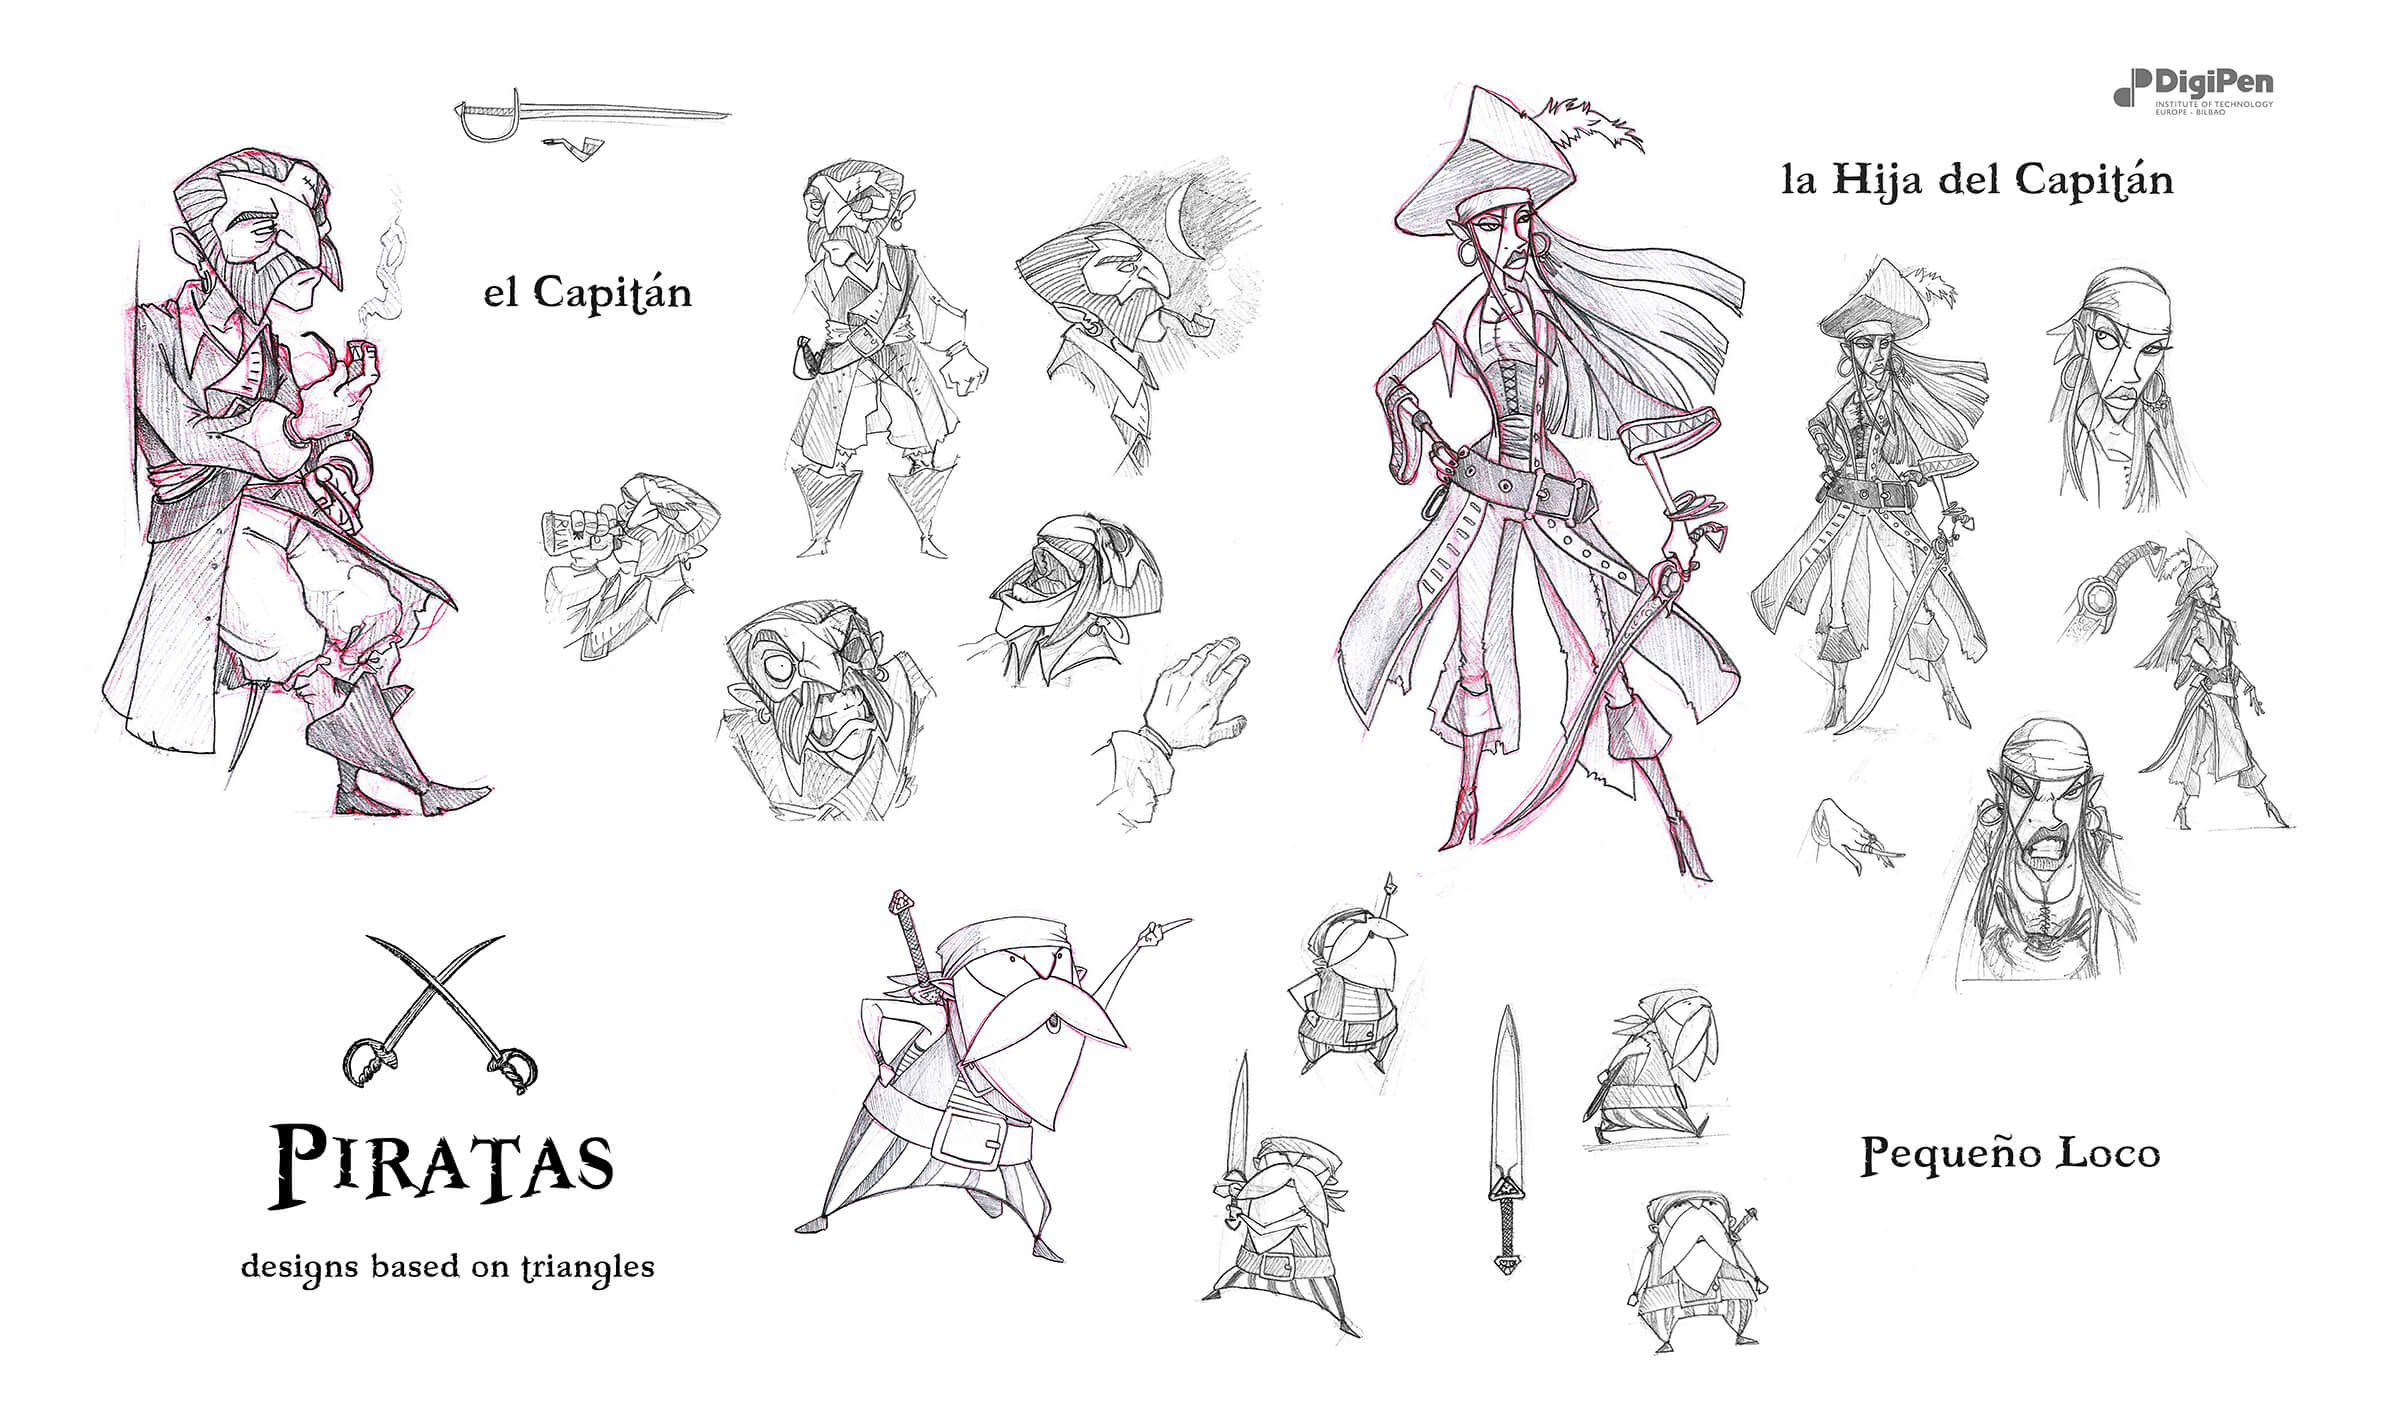 Bocetos en blanco y negro de un capitán pirata, su hija empuñando una espada y un pirata viejo y bajo.